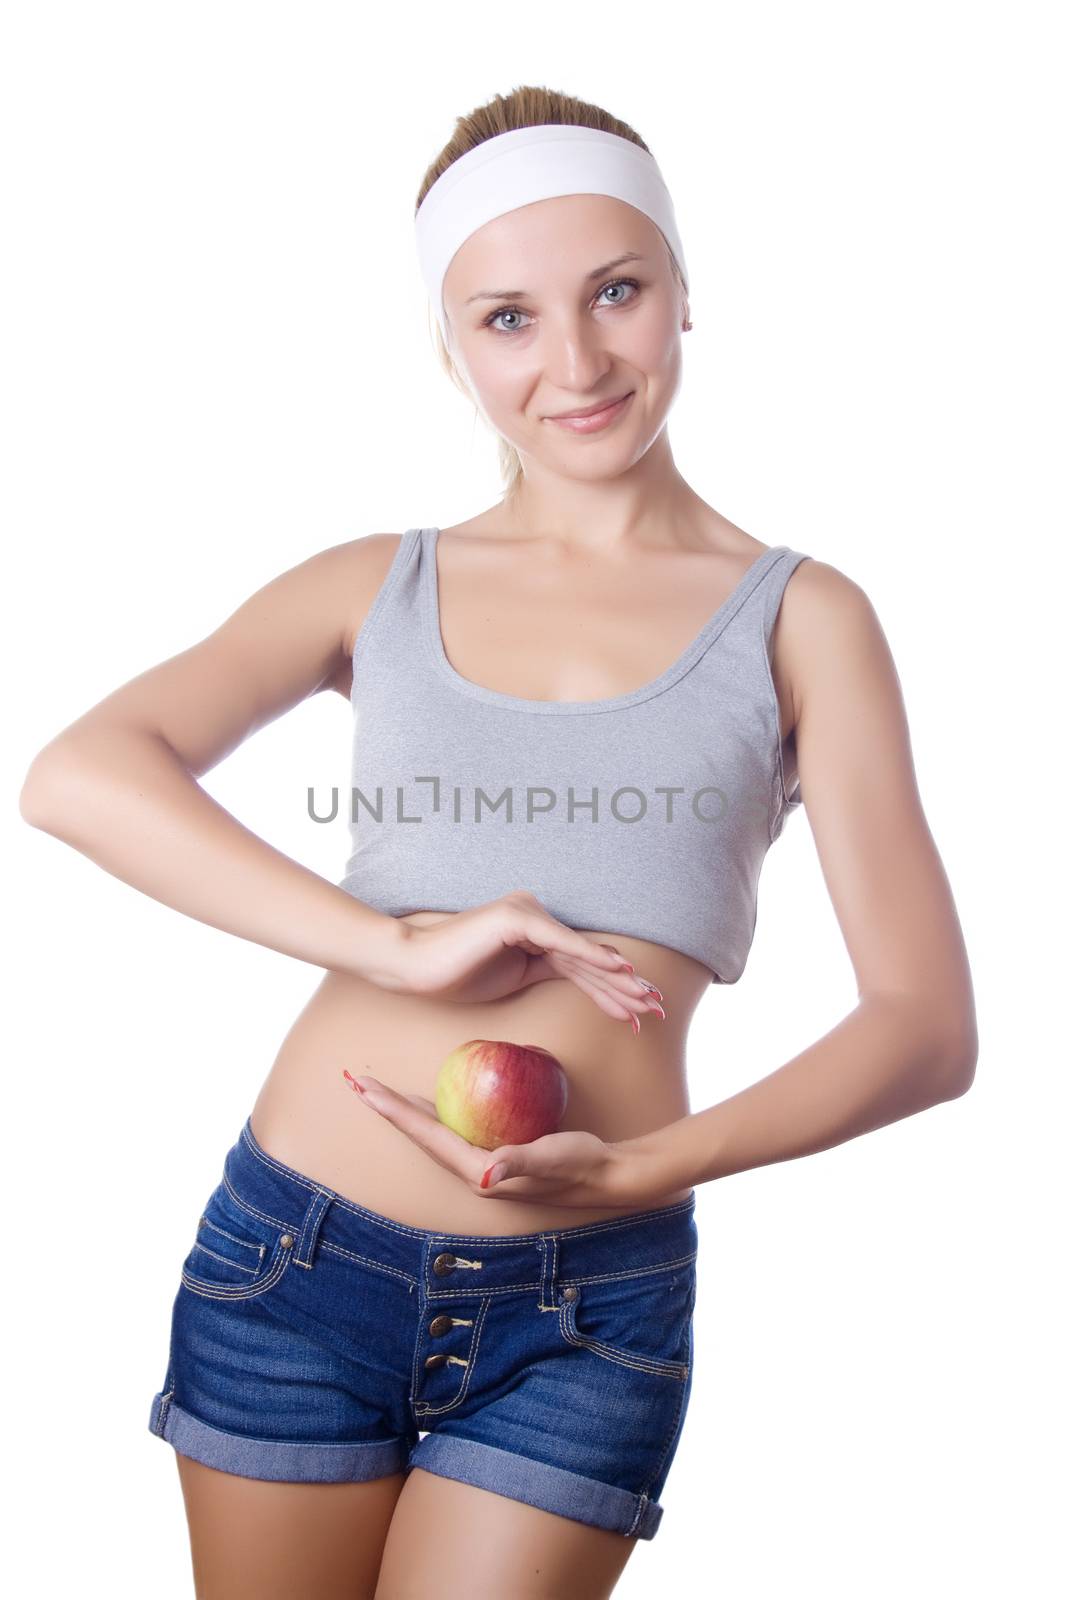 Apple diet by Irina1977